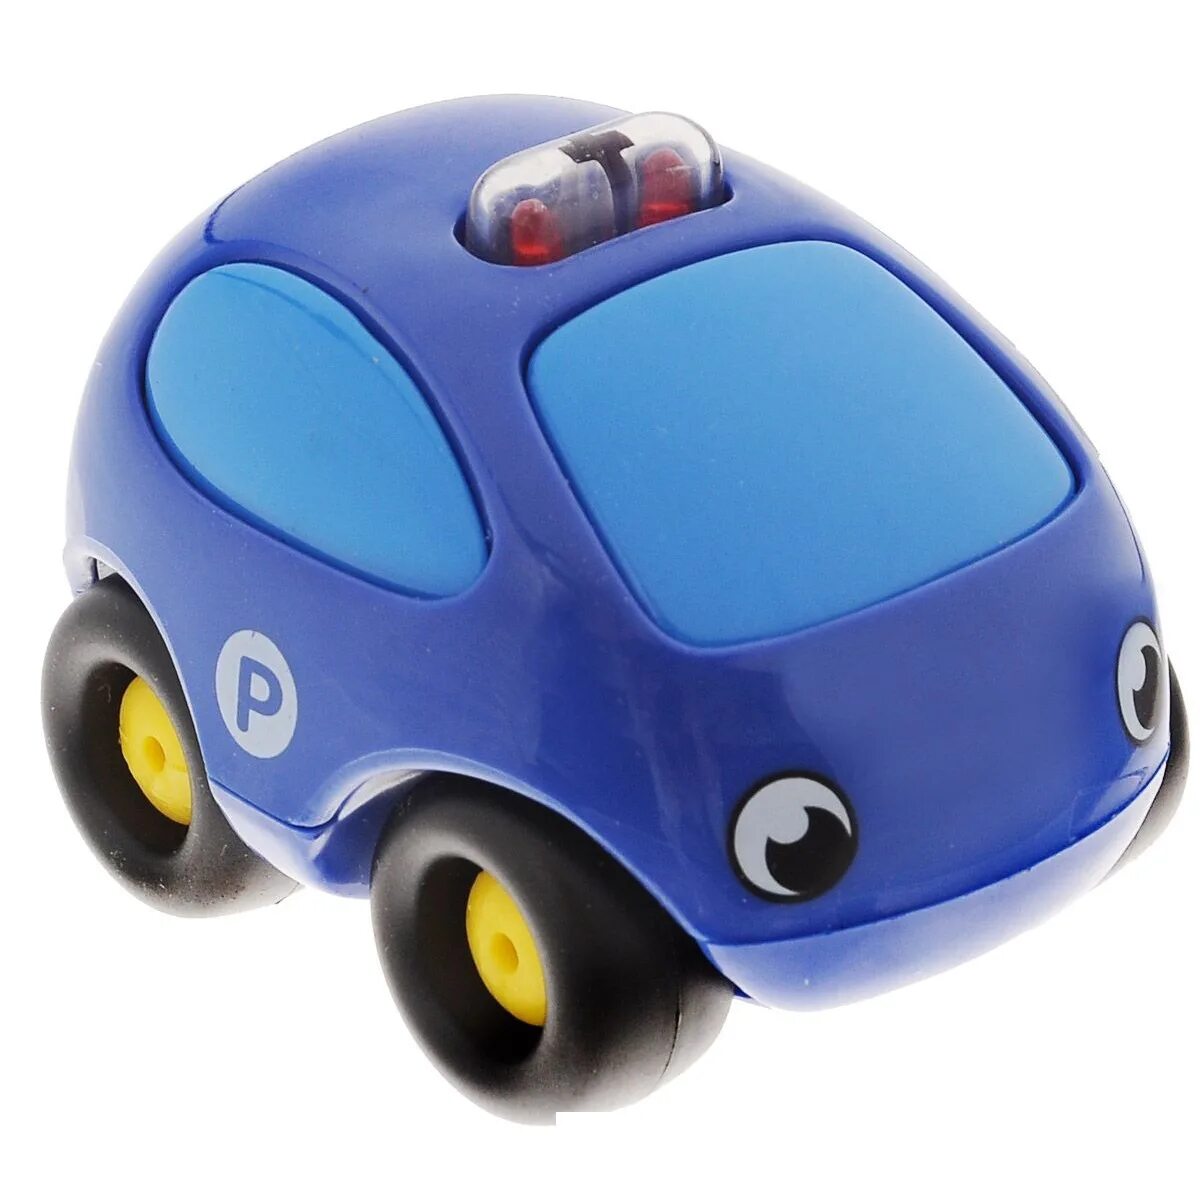 Машинки. Машинки Smoby Vroom Planet. Vroom Planet мини-машинки. Машинка синяя. Синяя игрушечная машинка.